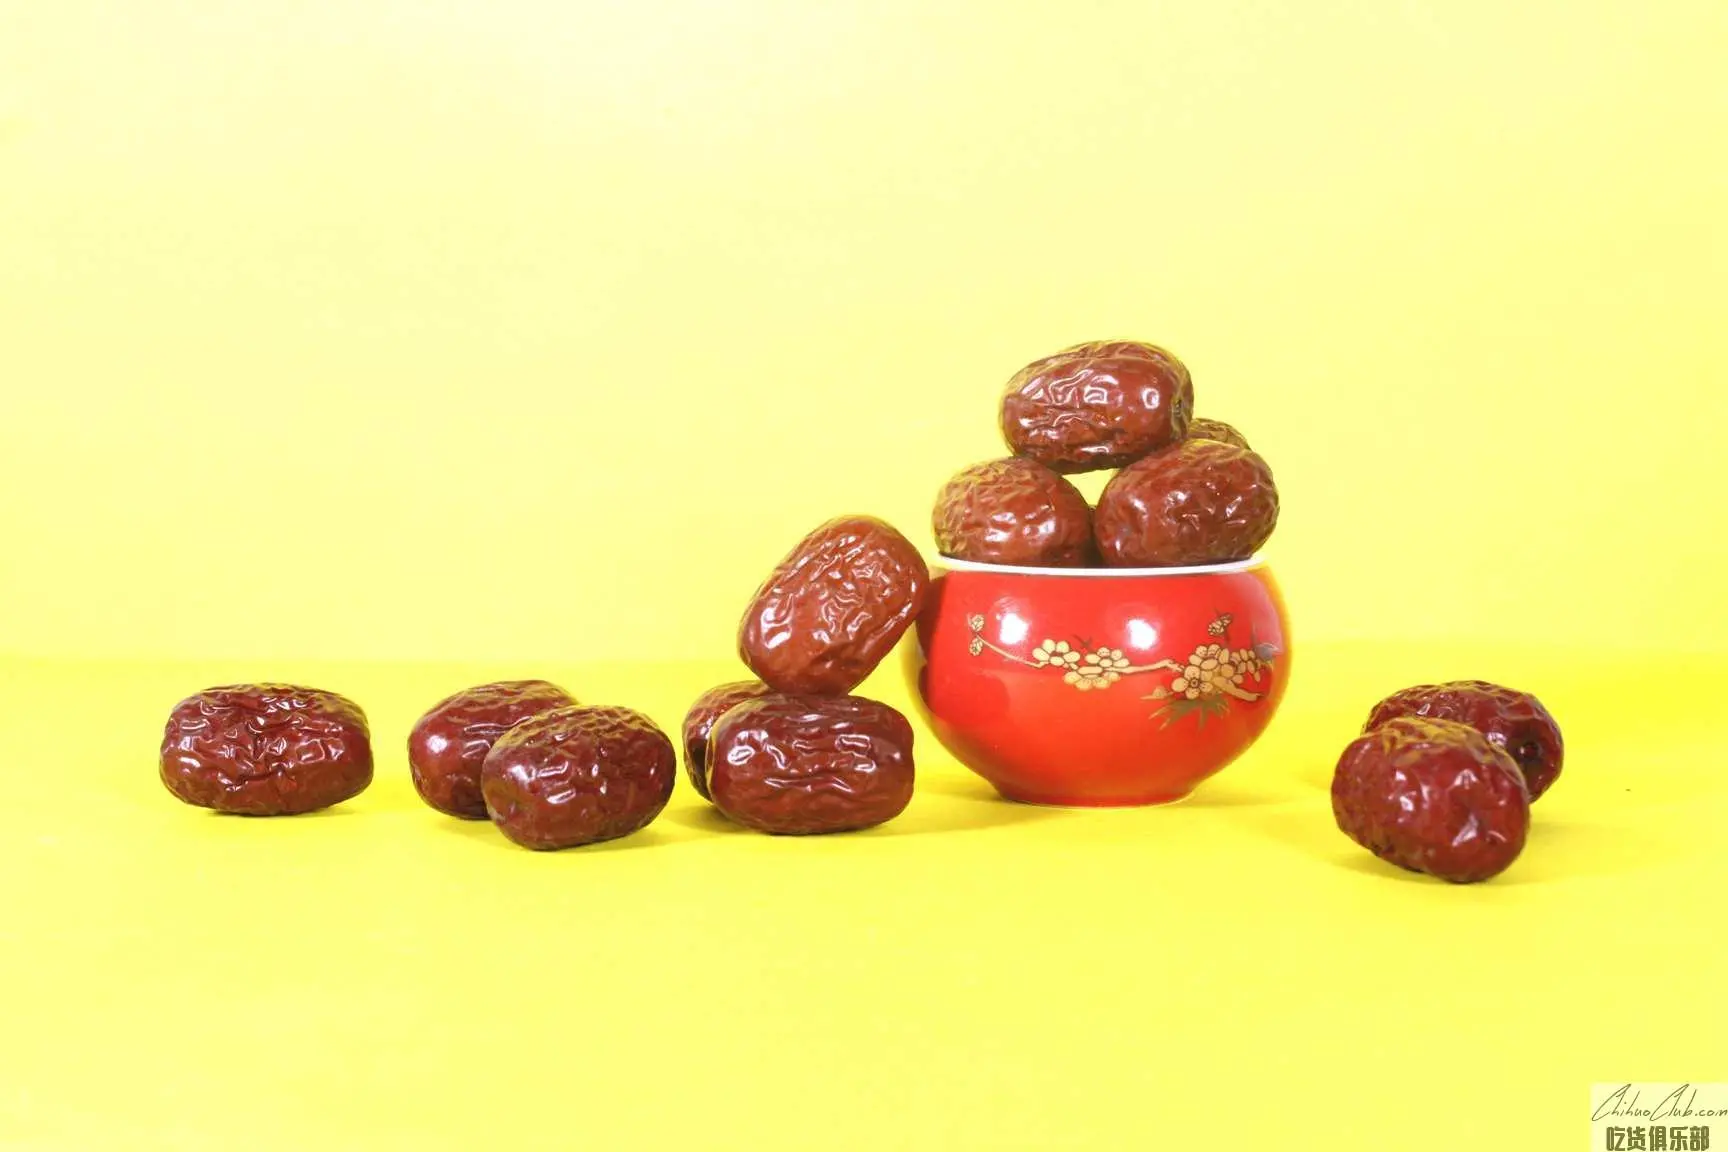 Ruoqiang red dates